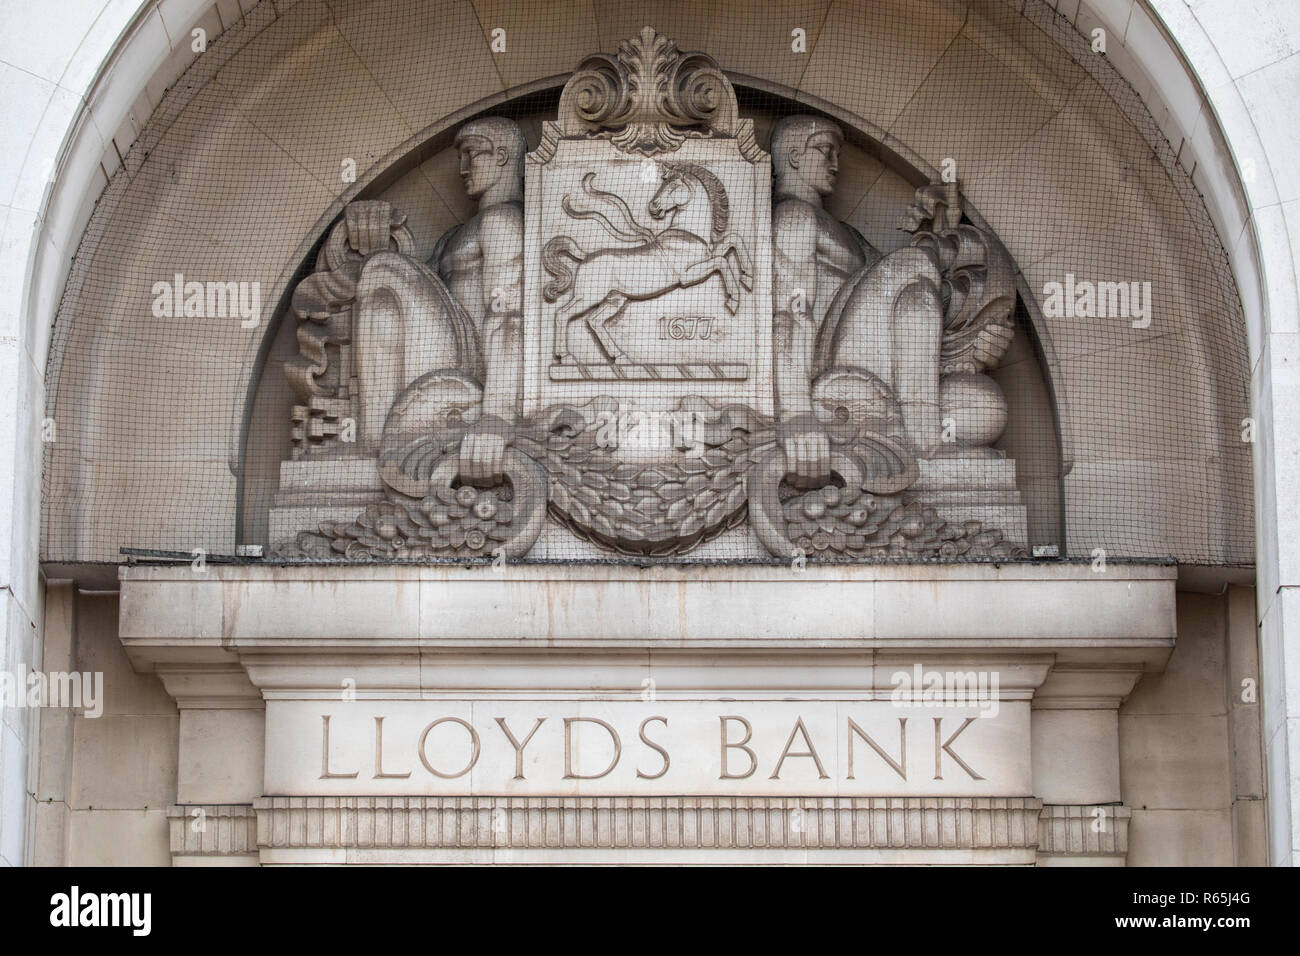 COVENTRY, Großbritannien - 26.JULI 2018: die kunstvoll geformten Fassade der Lloyds Bank in der historischen Stadt Coventry, Großbritannien, am 26. Juli 2018. Stockfoto